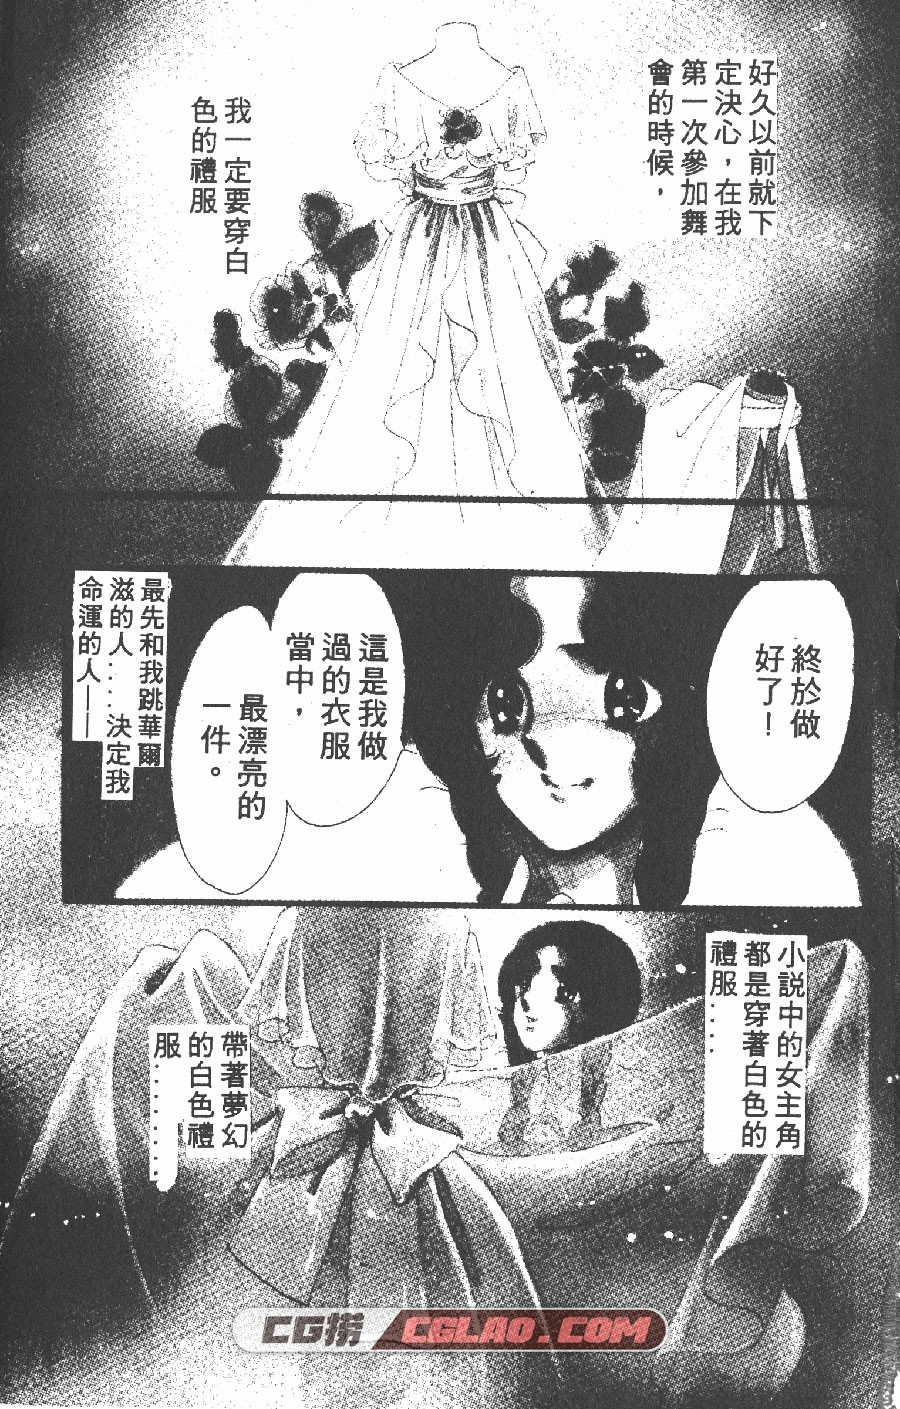 白色圆舞曲 齐藤千穗 1-4卷 漫画全部完结下载 百度网盘,BSL01-001.jpg